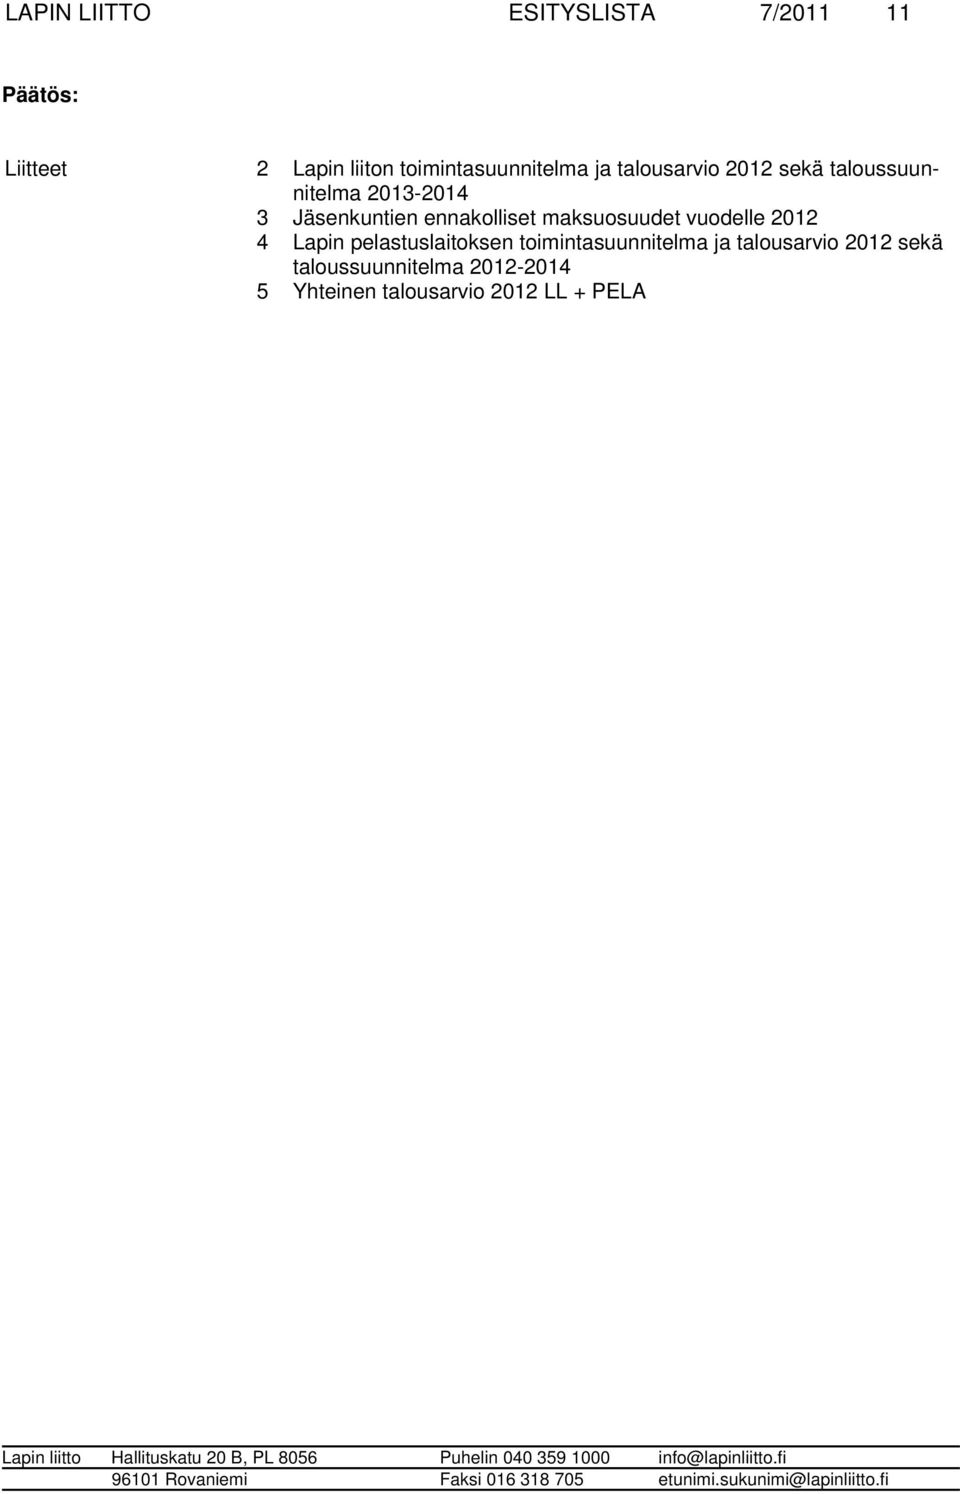 maksuosuudet vuodelle 2012 4 Lapin pelastuslaitoksen toimintasuunnitelma ja